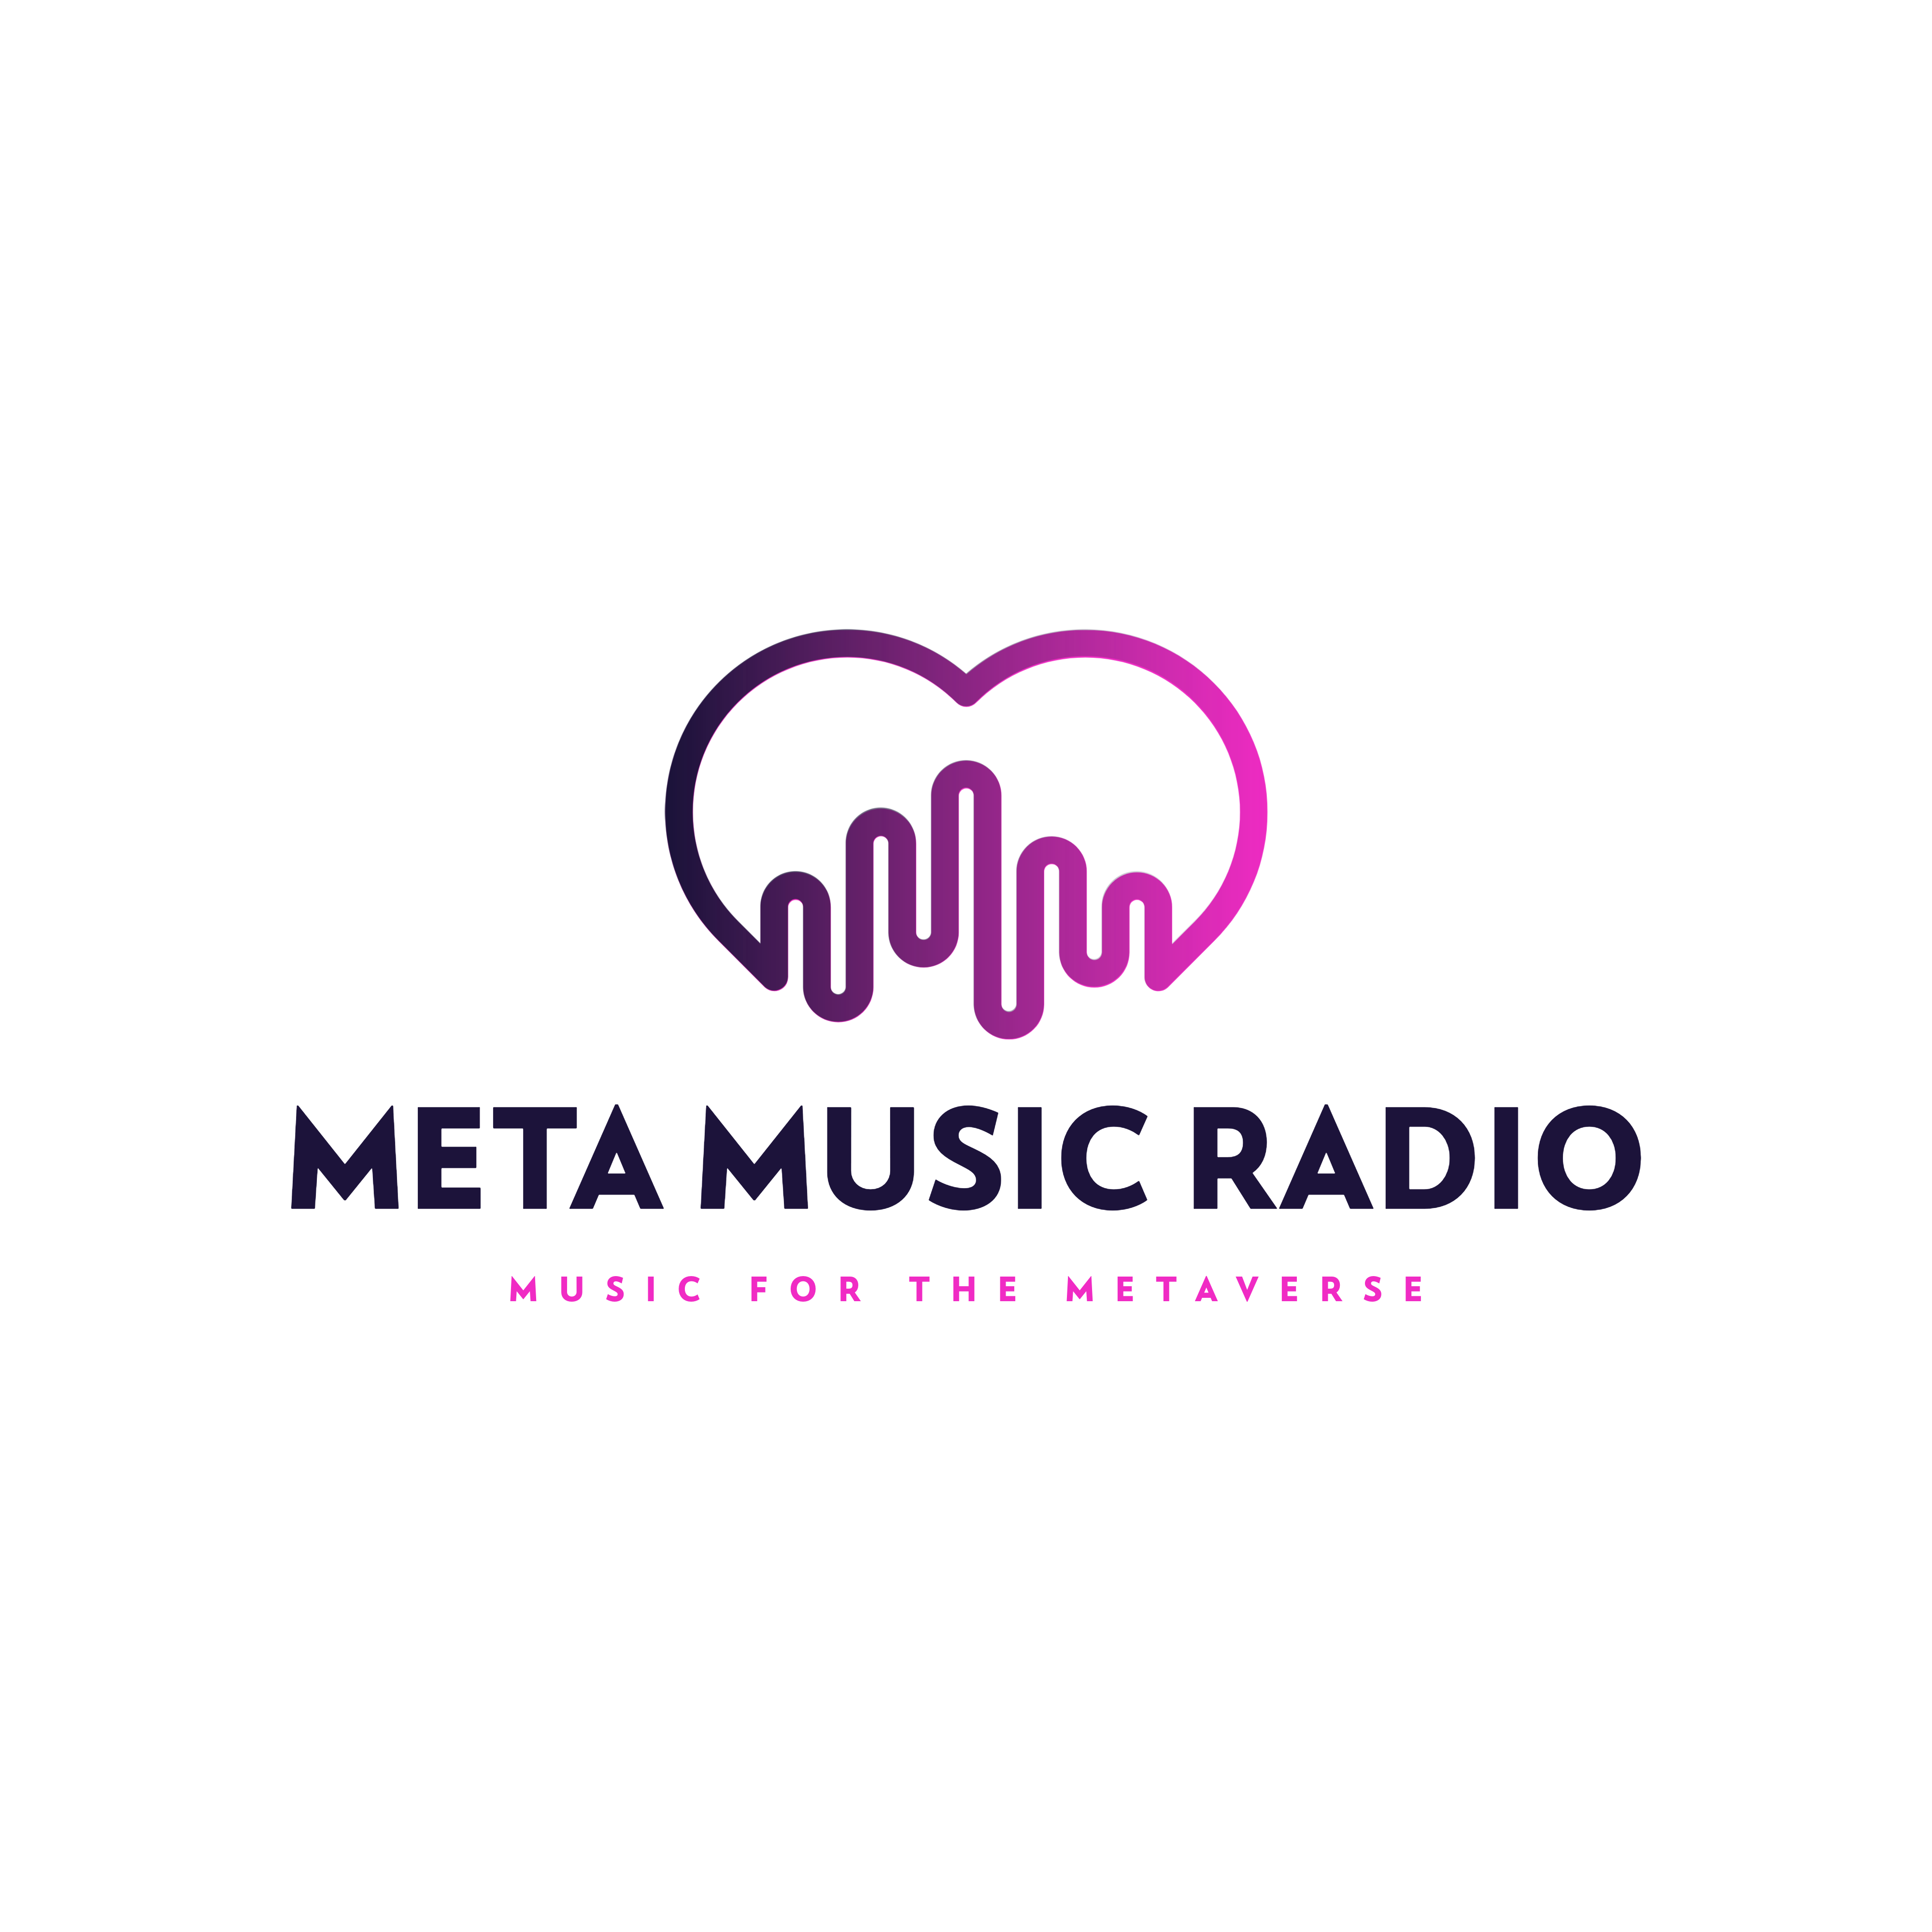 MetaMusicRadio